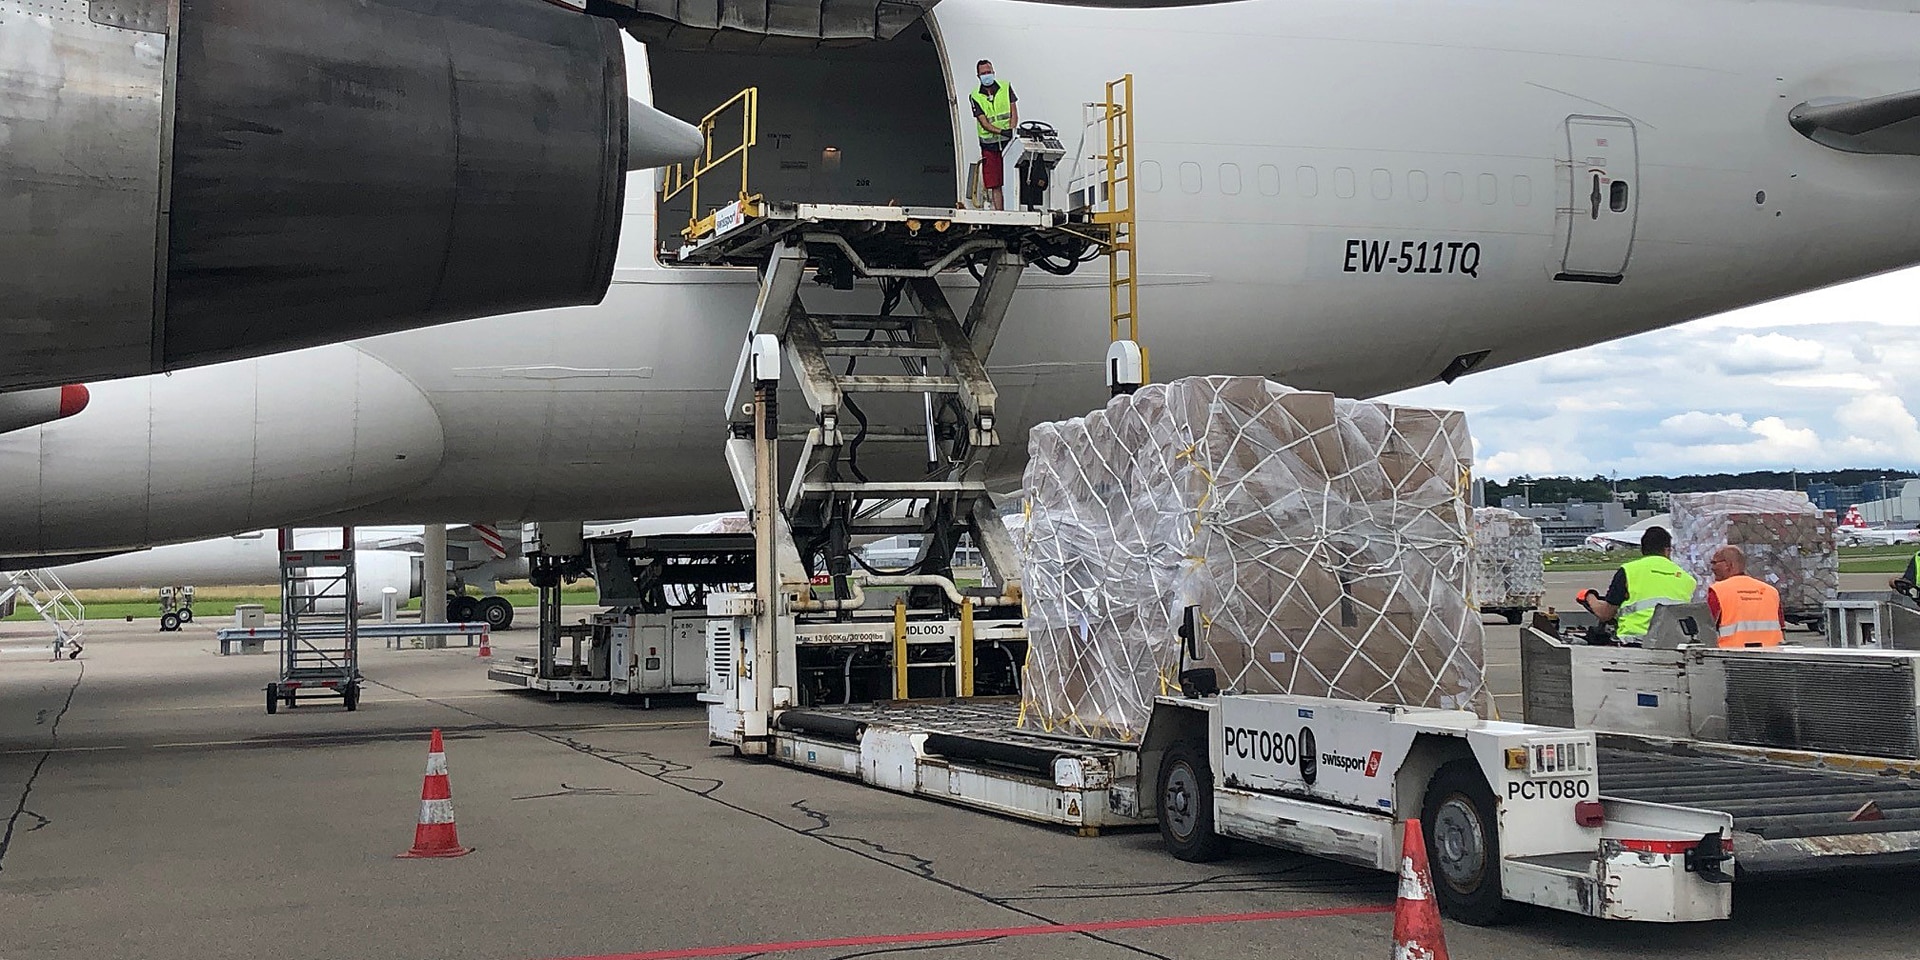  All'aeroporto di Zurigo, circa 100 tonnellate di materiale di soccorso con destinazione Caracas vengono caricate su un jumbo jet. 